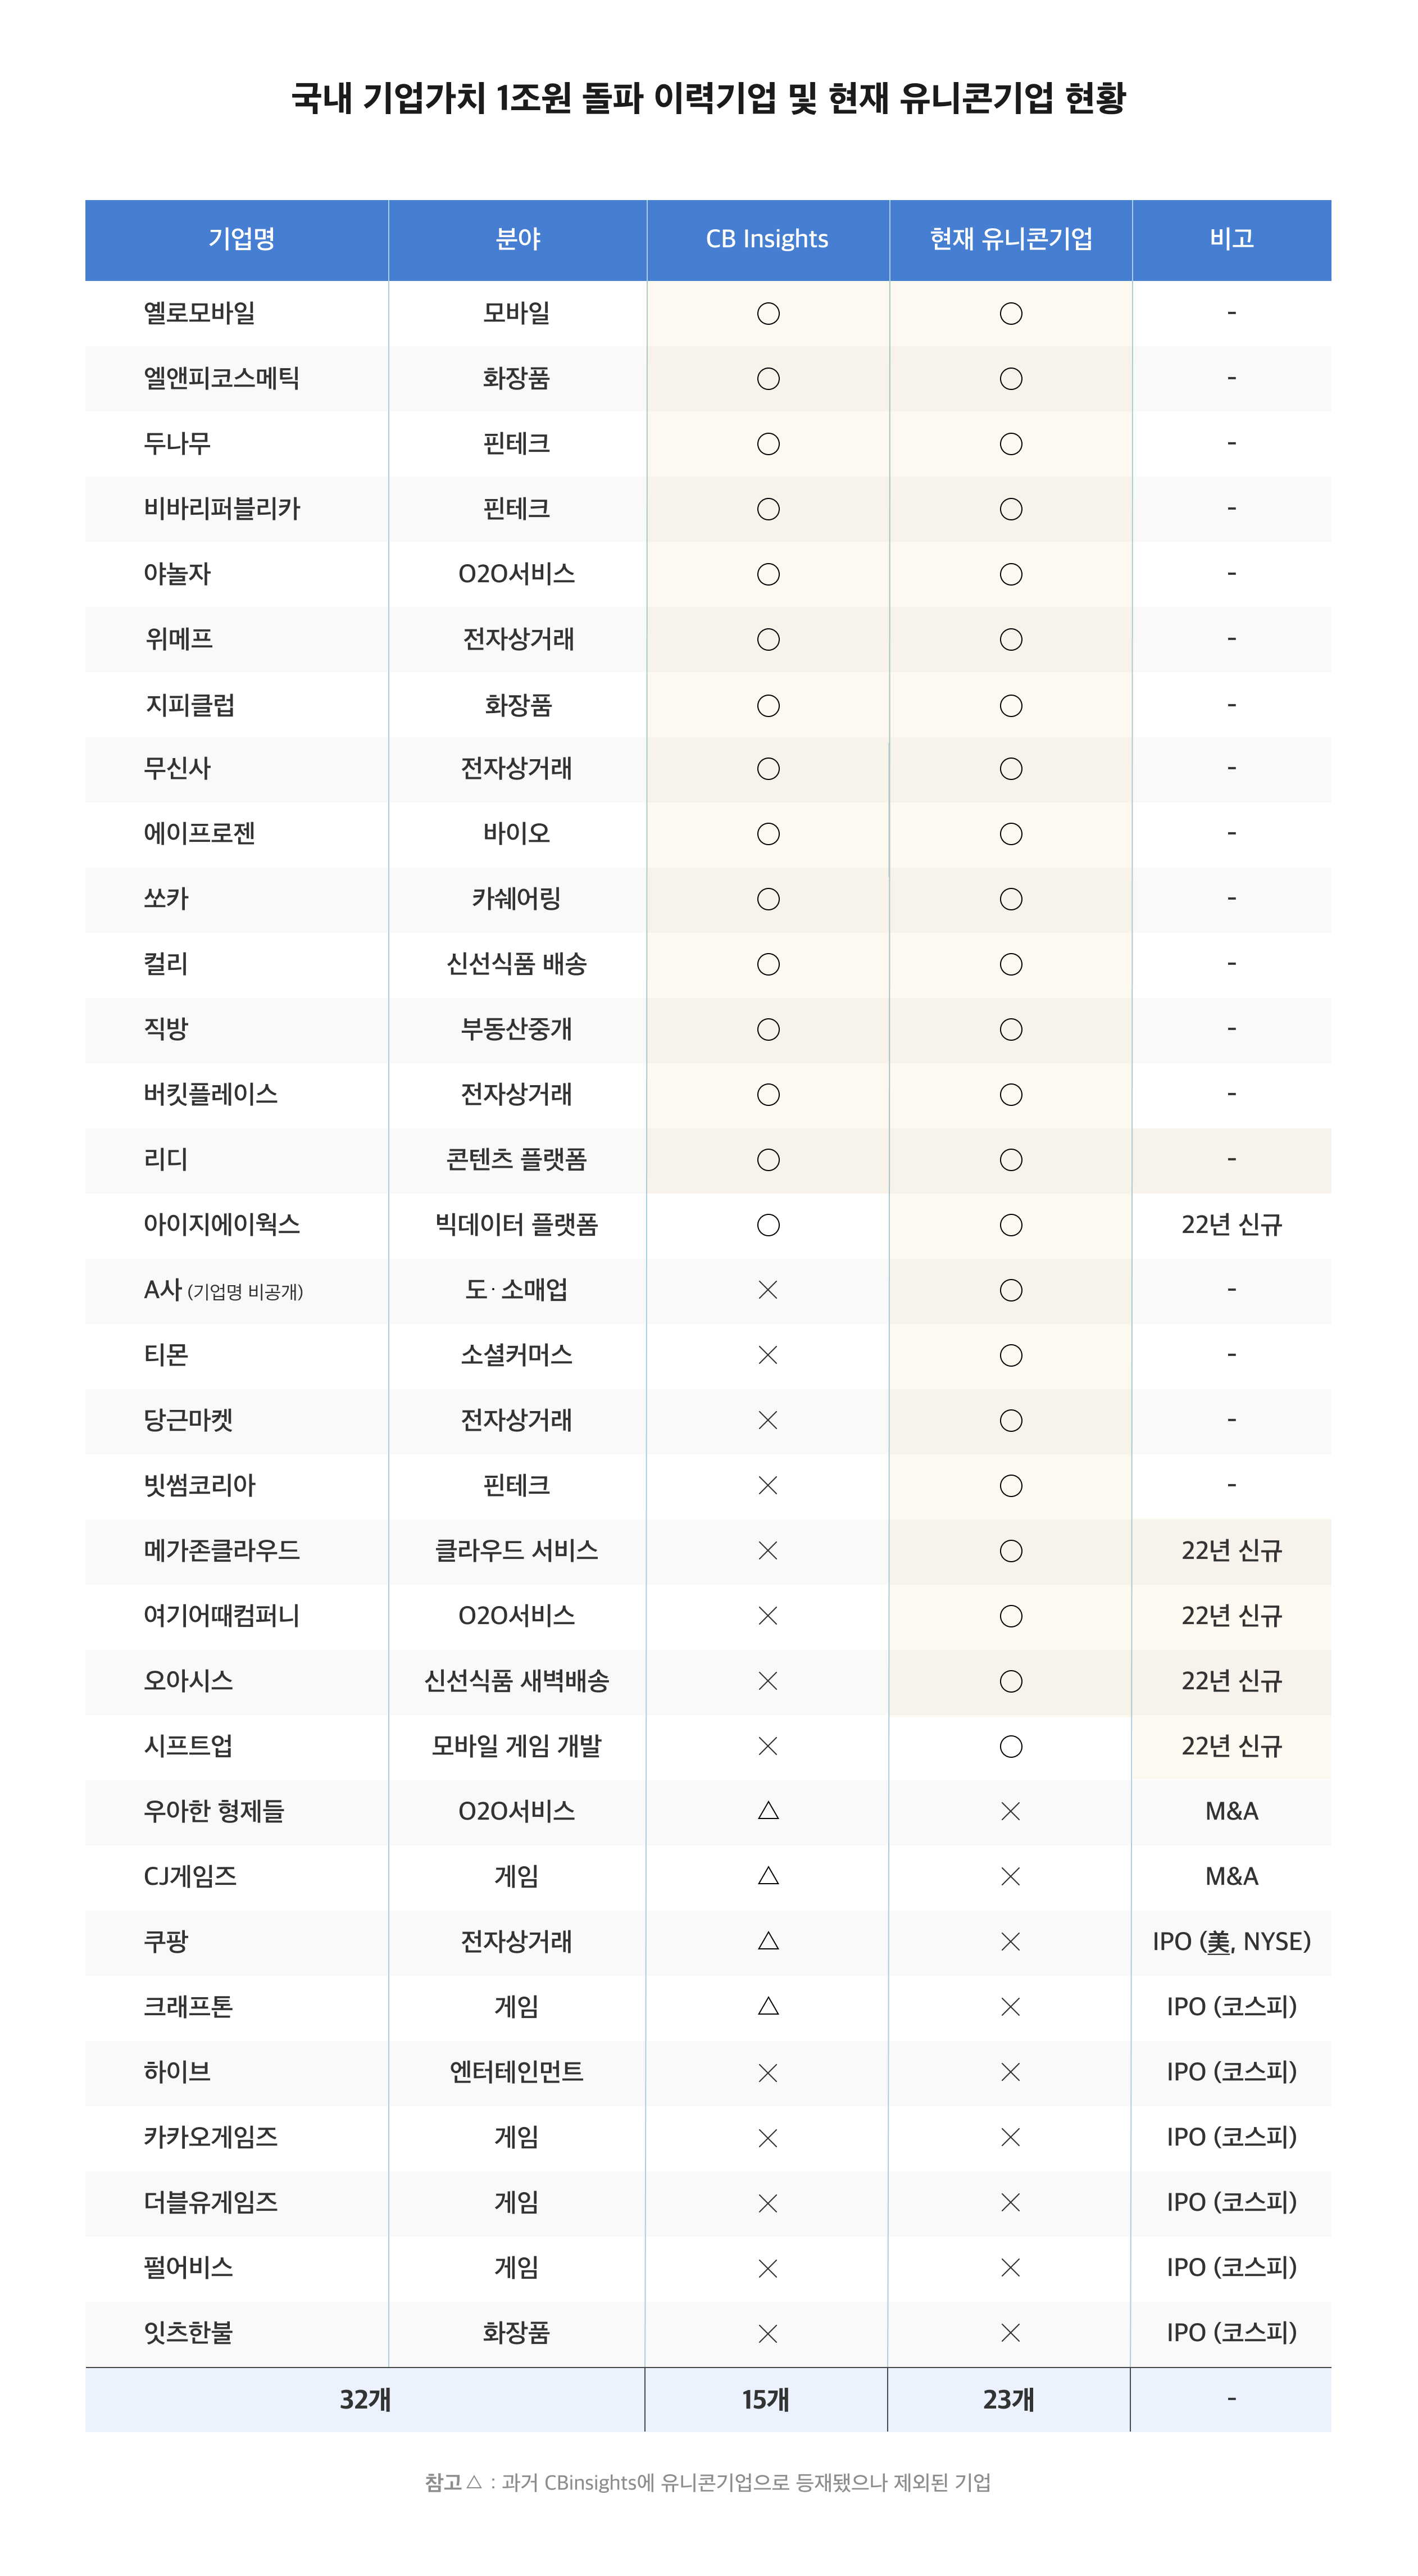 국내 유니콘 기업 리스트&#44; 한국 유니콘 기업 리스트&#44; 신규 유니콘 기업&#44; 기업가치&#44; 스타트업